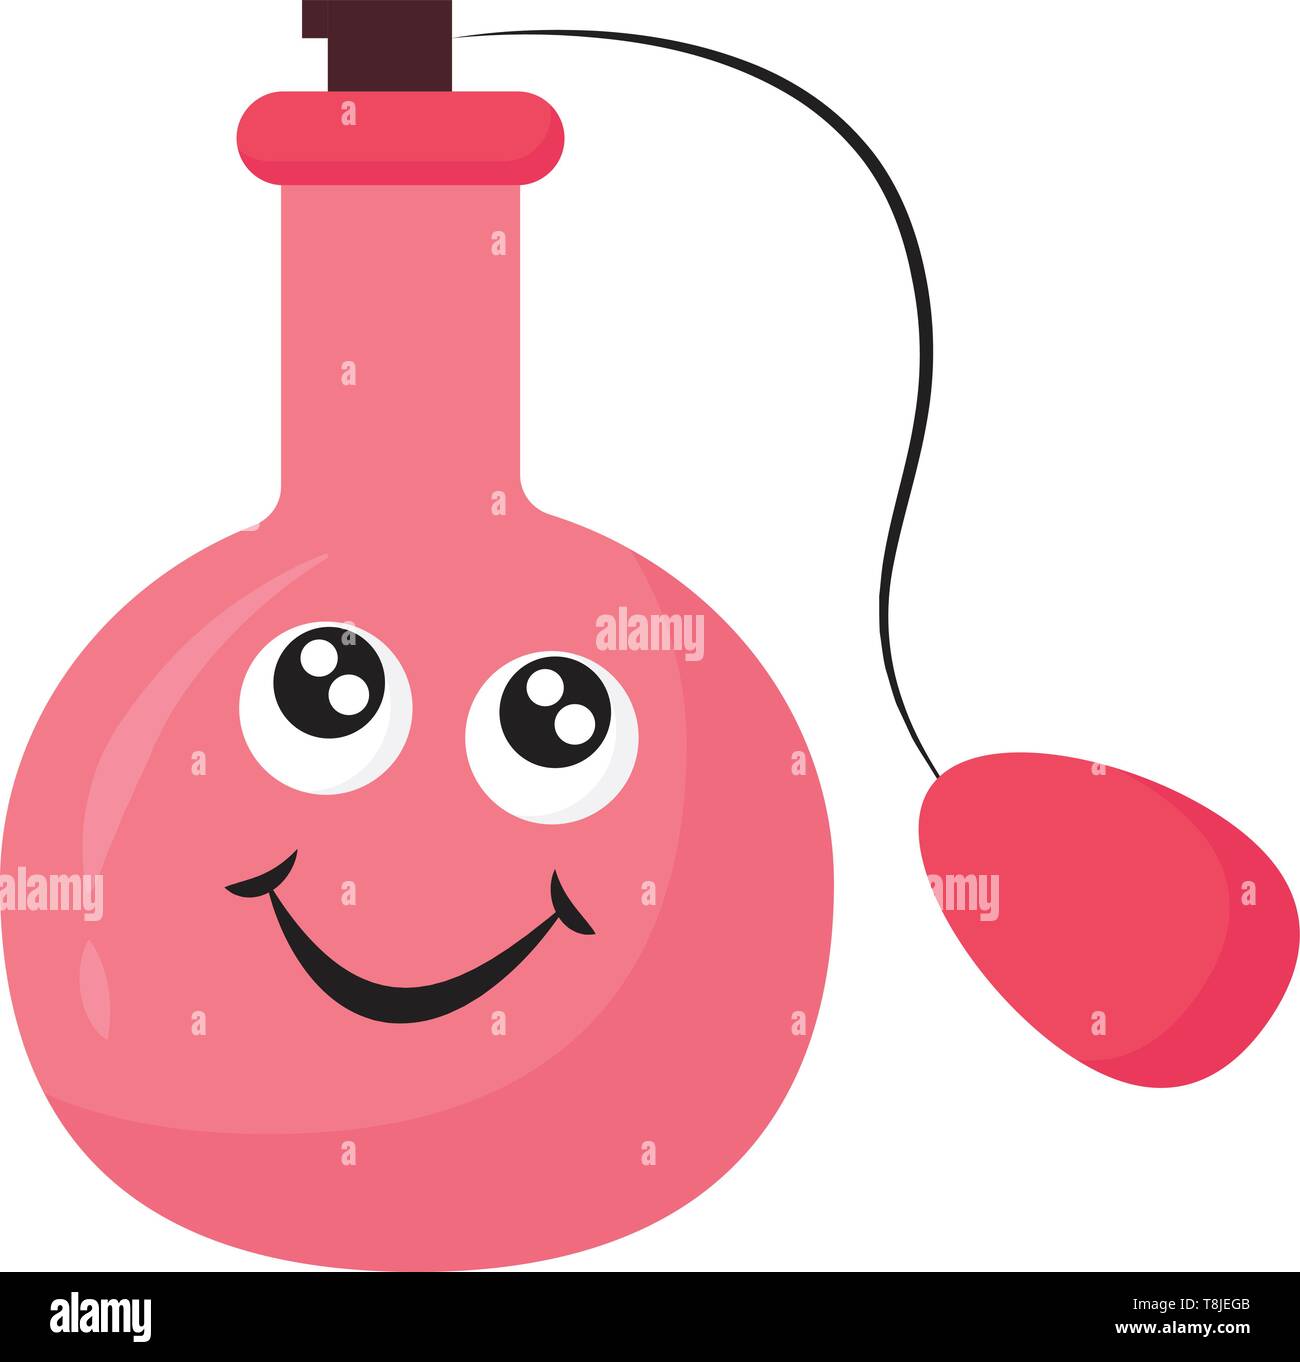 Rosa gefärbte Flasche, mit funkelnden Augen und lächelndes Gesicht, ein schwarzer Kork und einer Pumpe Parfüm, Vektor zu lösen, Farbe, Zeichnung oder Abbildung. Stock Vektor